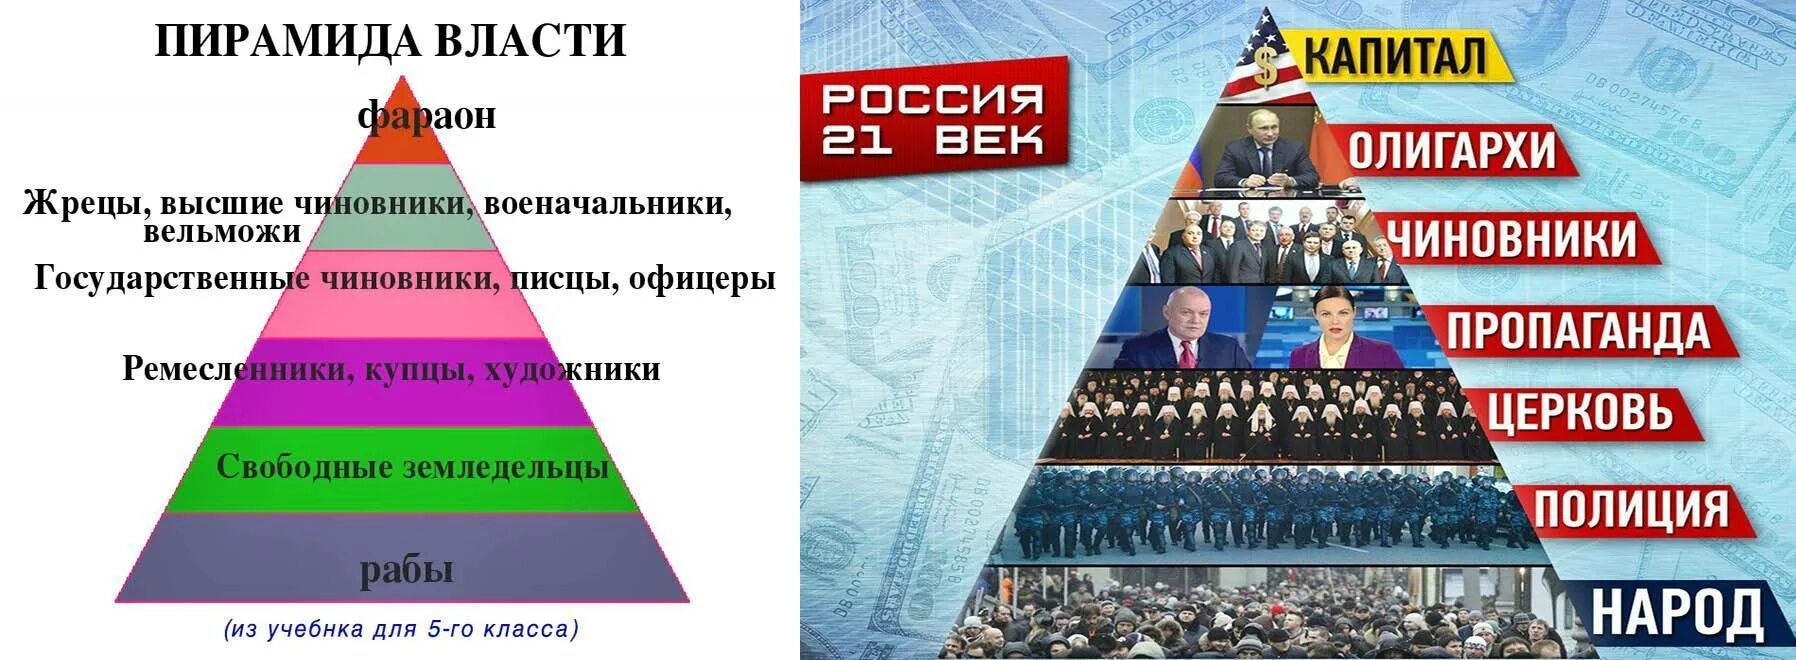 Власть первого ограничивает. Пирамида власти. Пиримала власти. Пирамида ВЛАСТB. Пирамида власти в России.